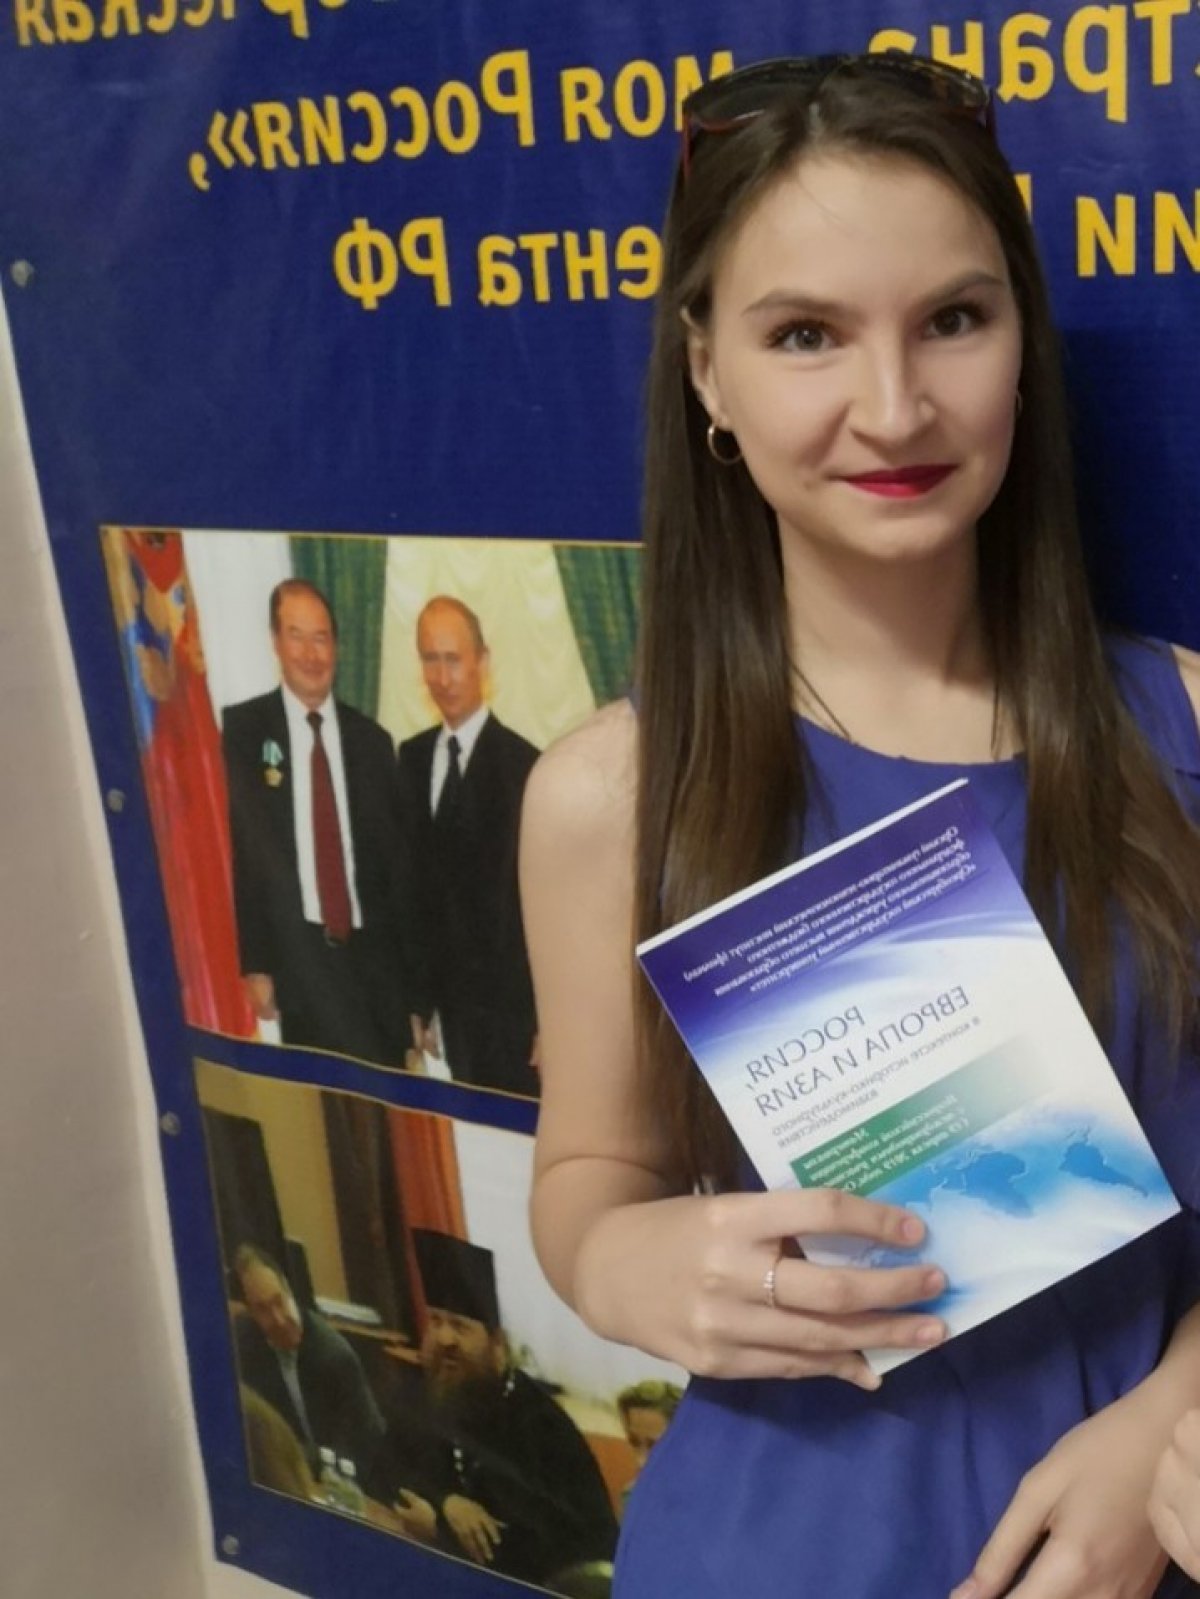 Наша студентка Емельянова Екатерина в октябре 2019 г. направила заявку на участие в Международной конференции «Донецкие чтения 2019: образование, наука, инновации, культура и вызовы современности».